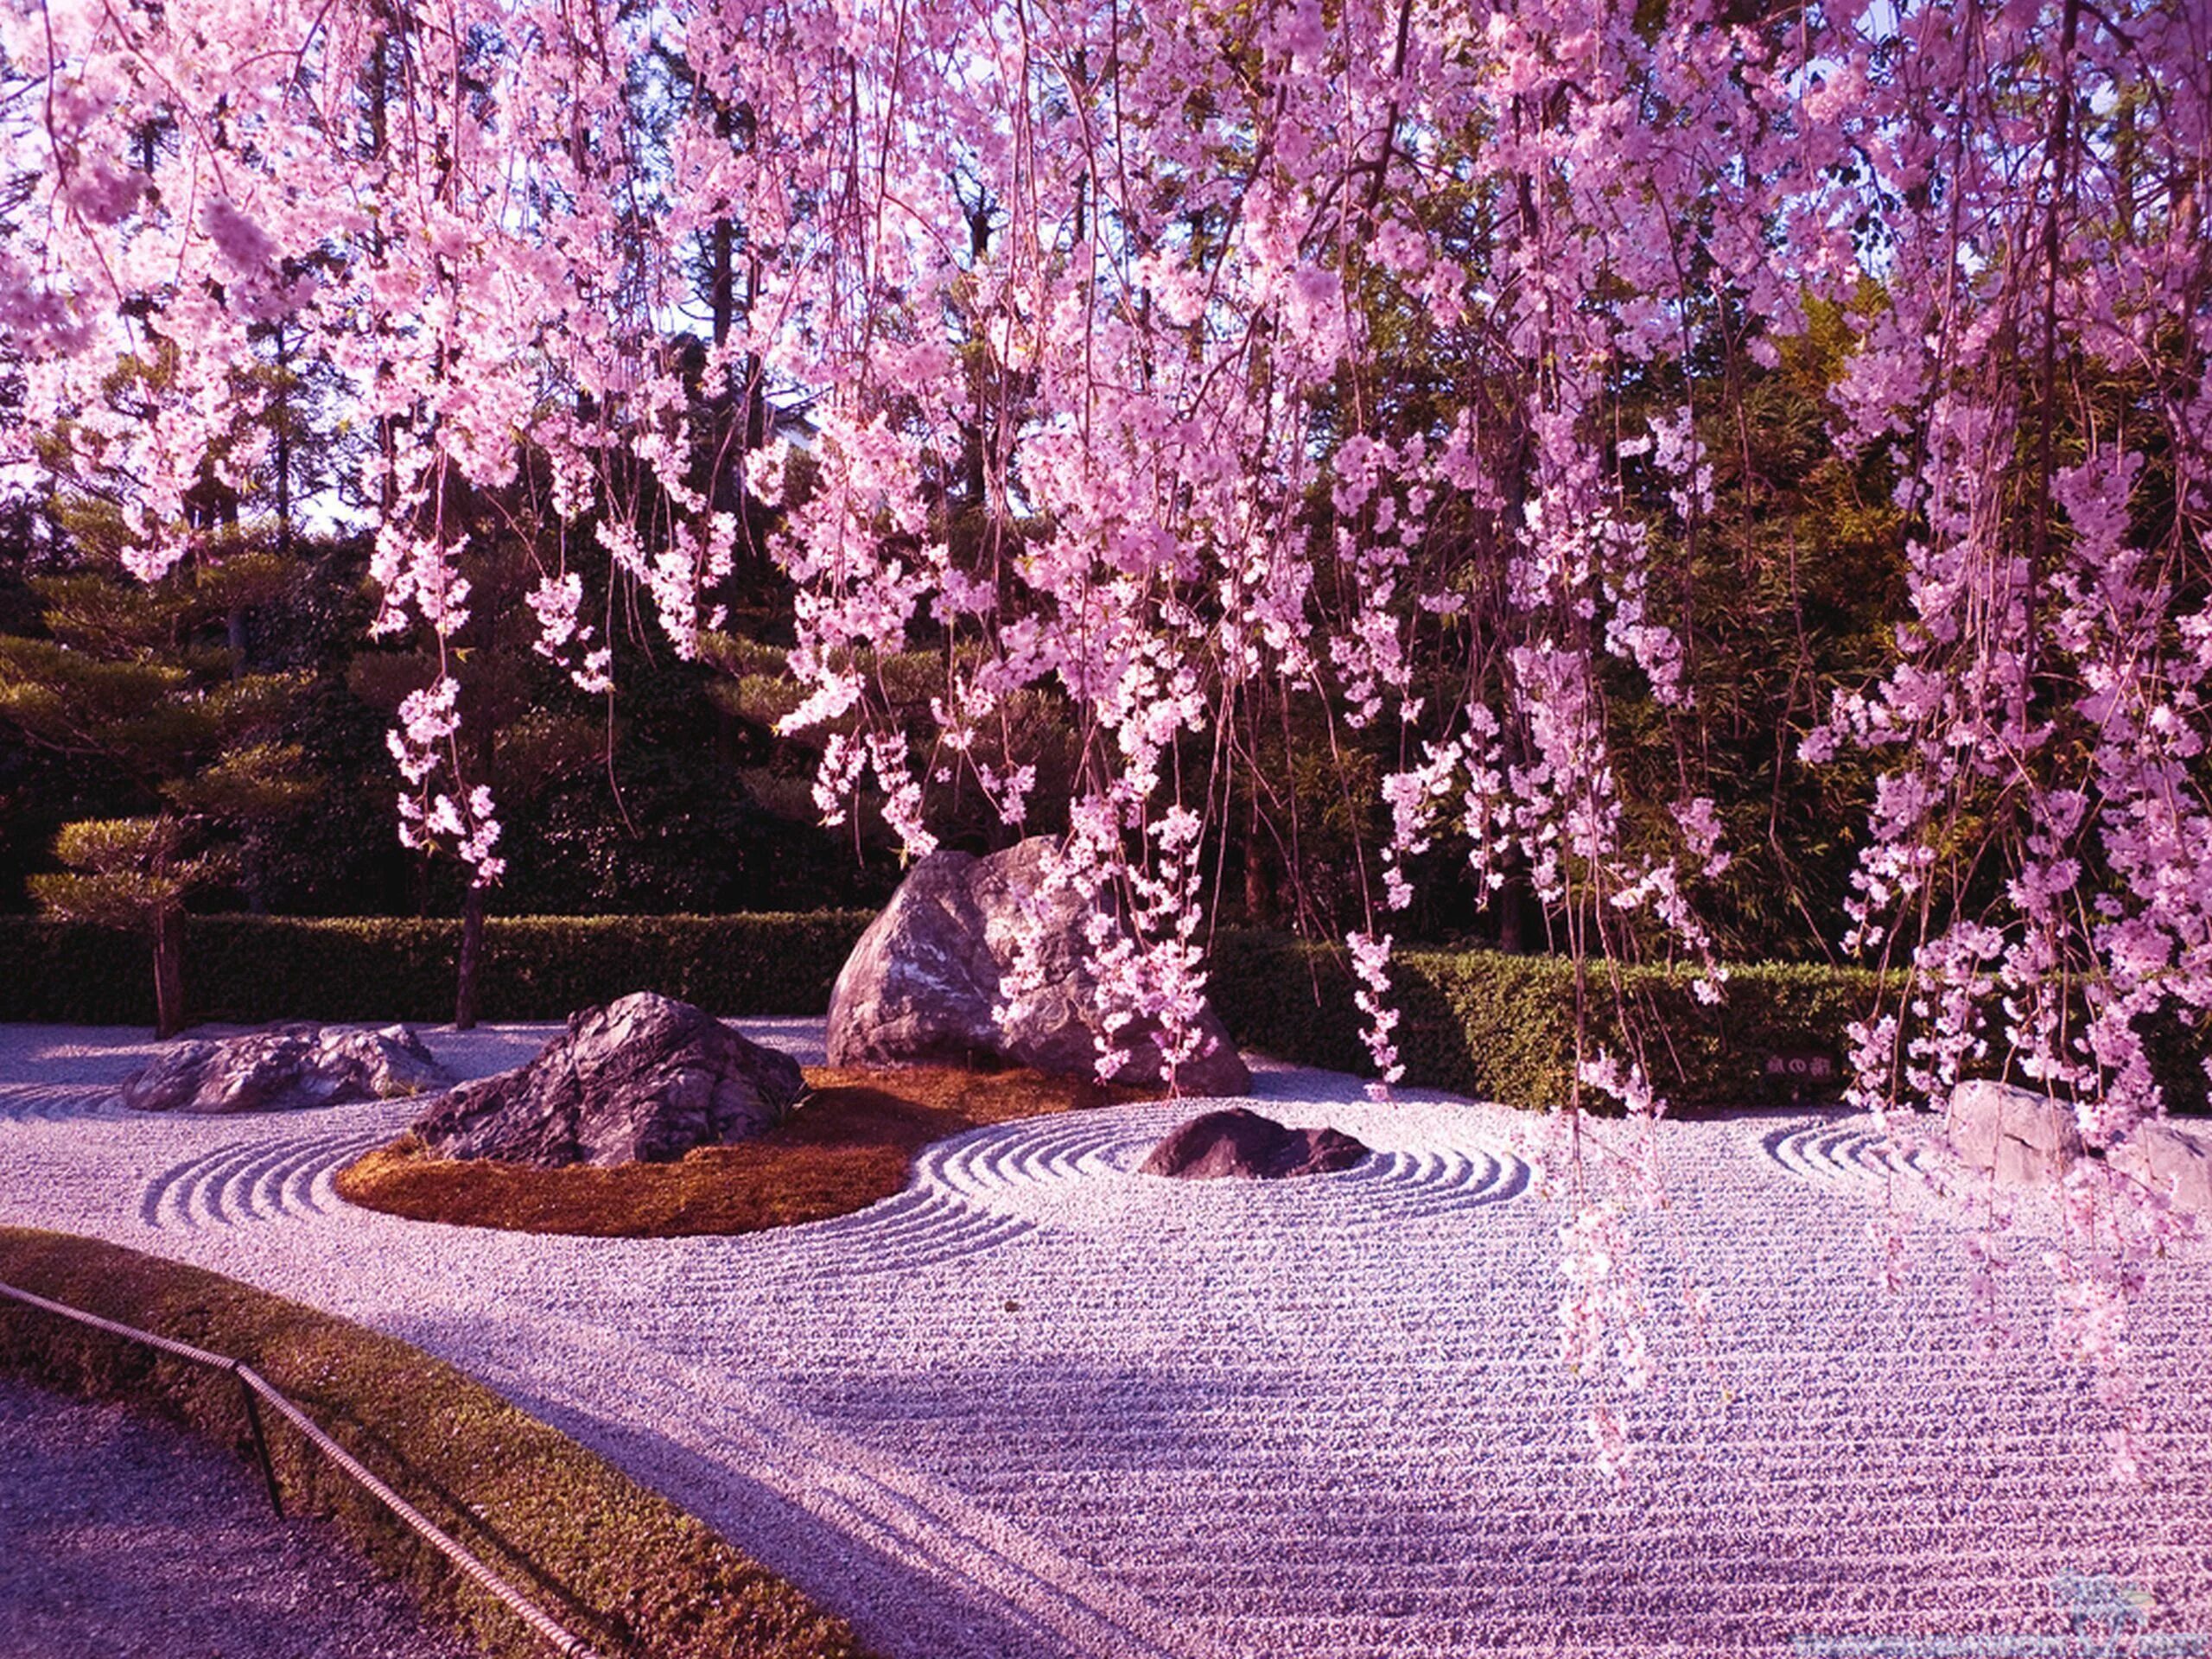 Сад цветущей сакуры. Японский сад ВДНХ Сакура. Йокогама Япония цветение Сакуры. Япония дворец Сакура сад. Переславль-Залесский японский сад с сакурой.